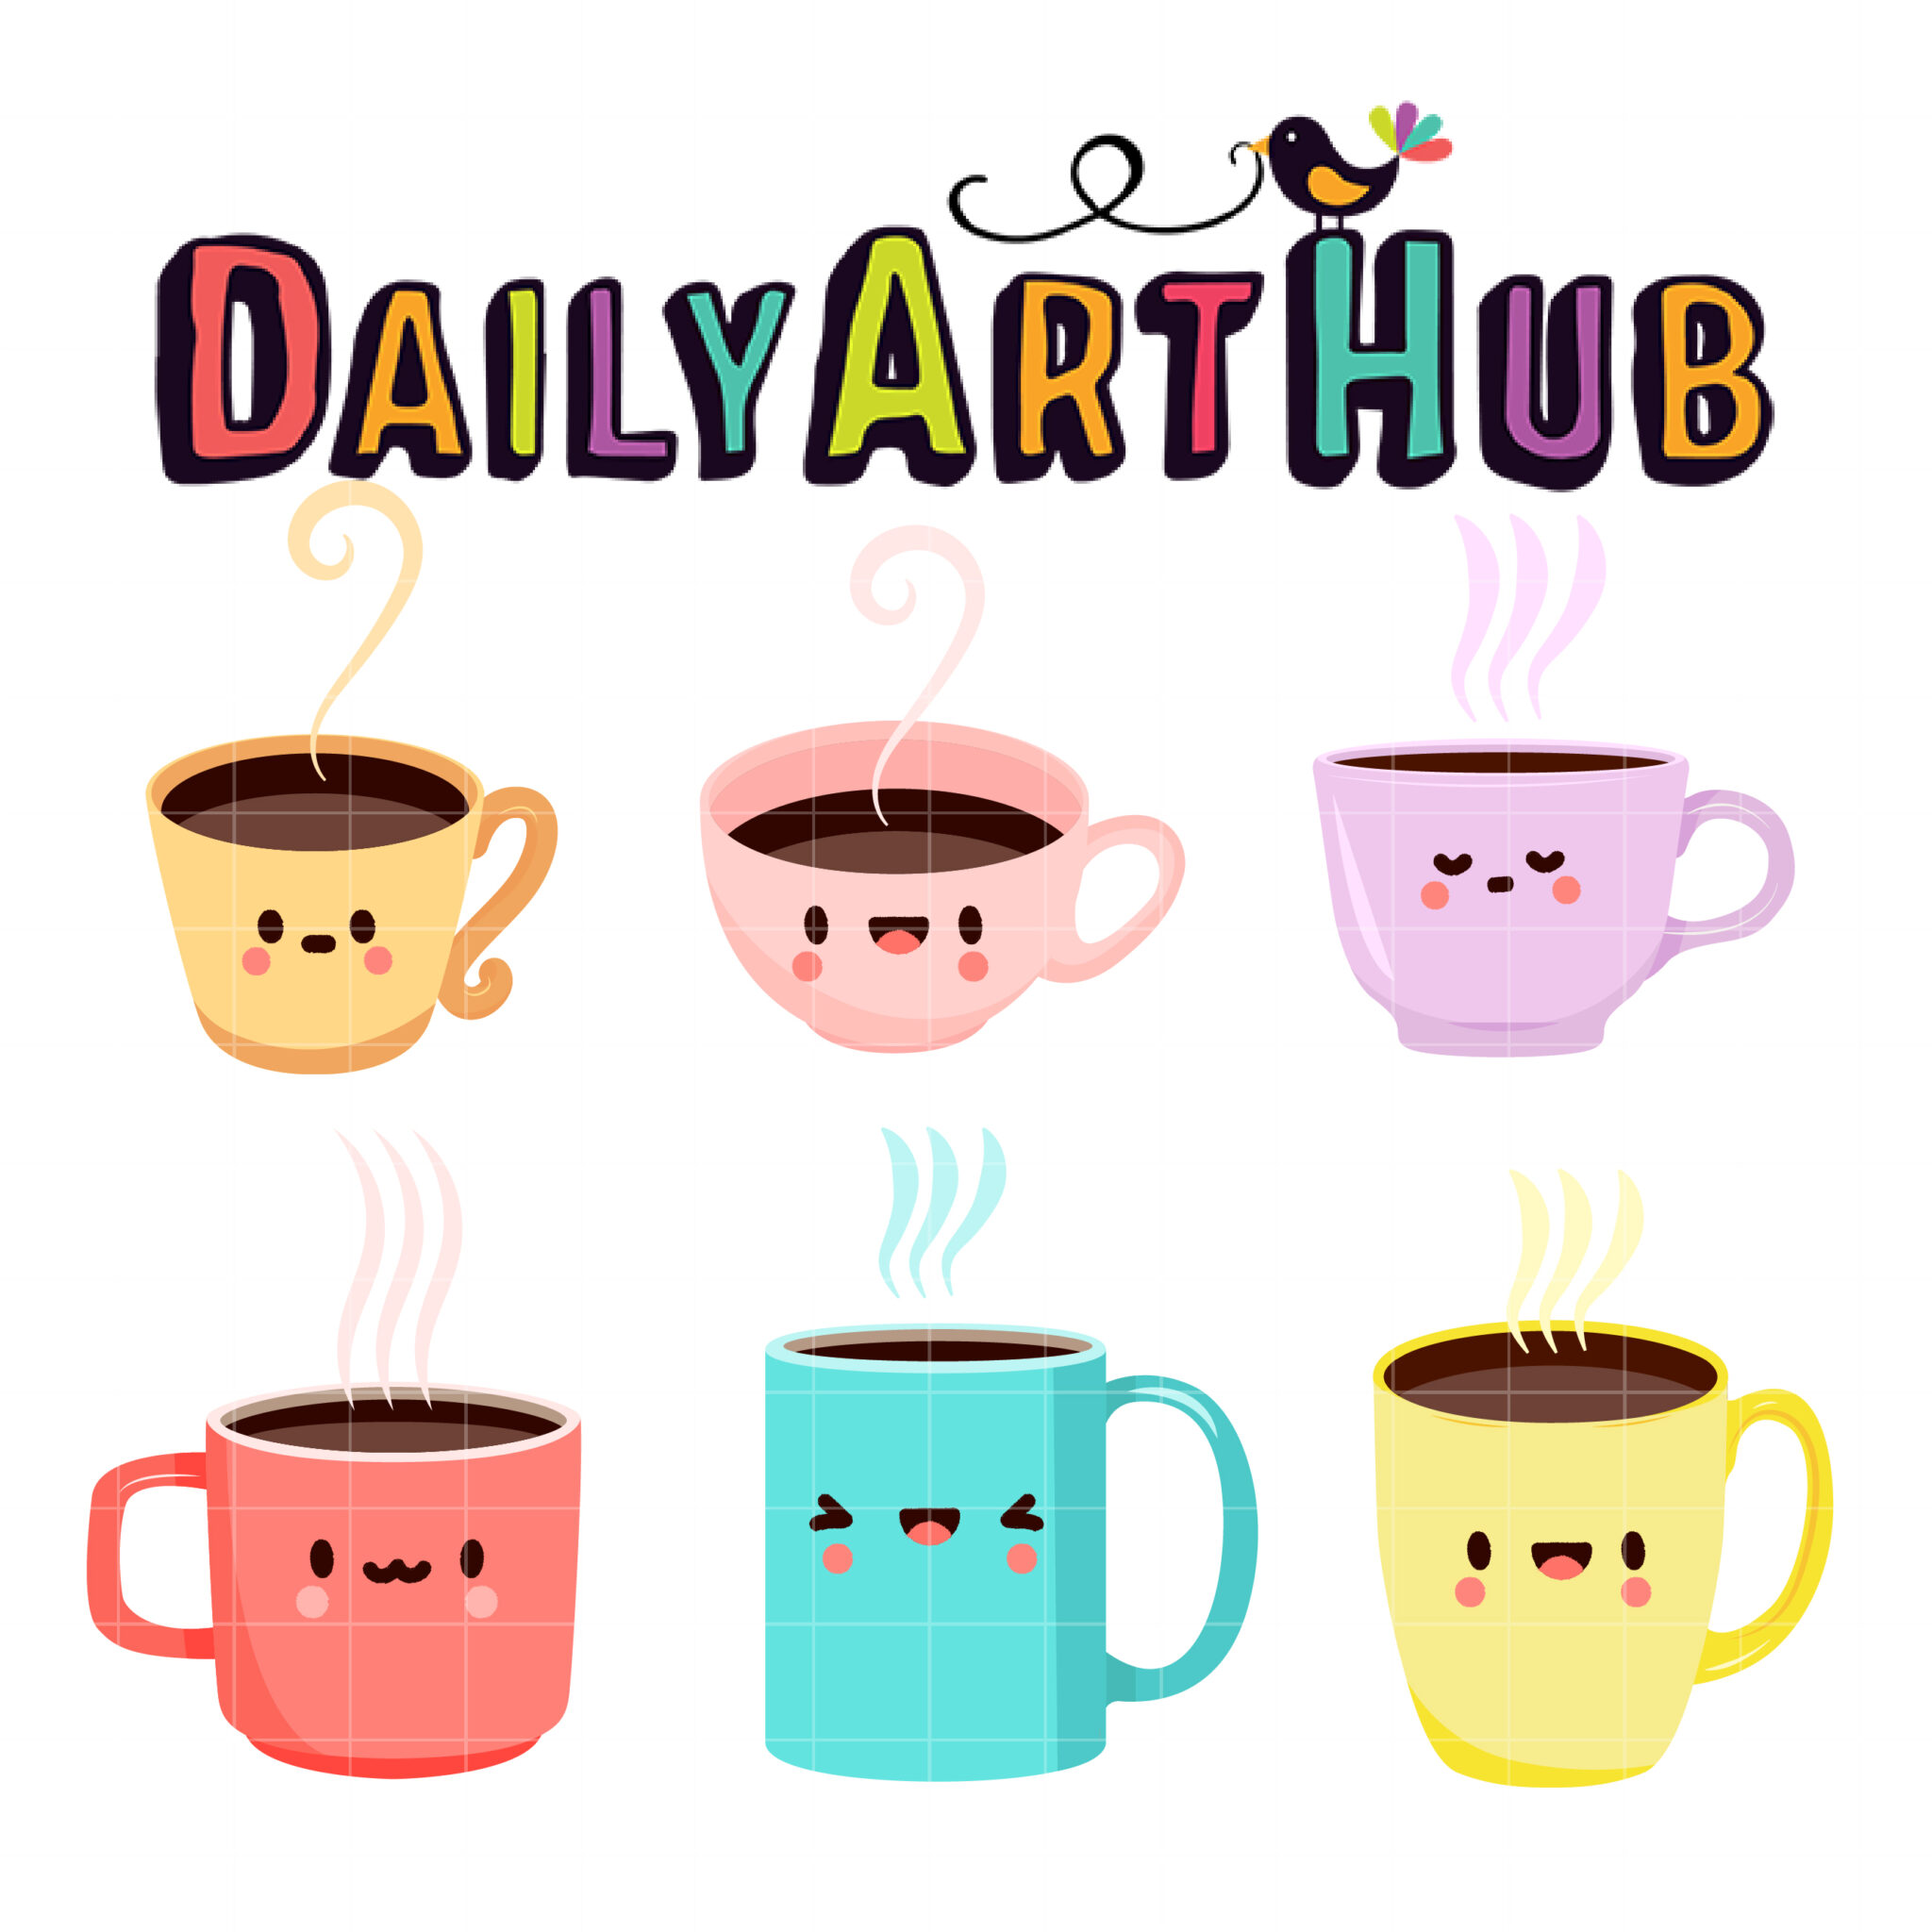 Cute Coffee Mug Coffee Mug